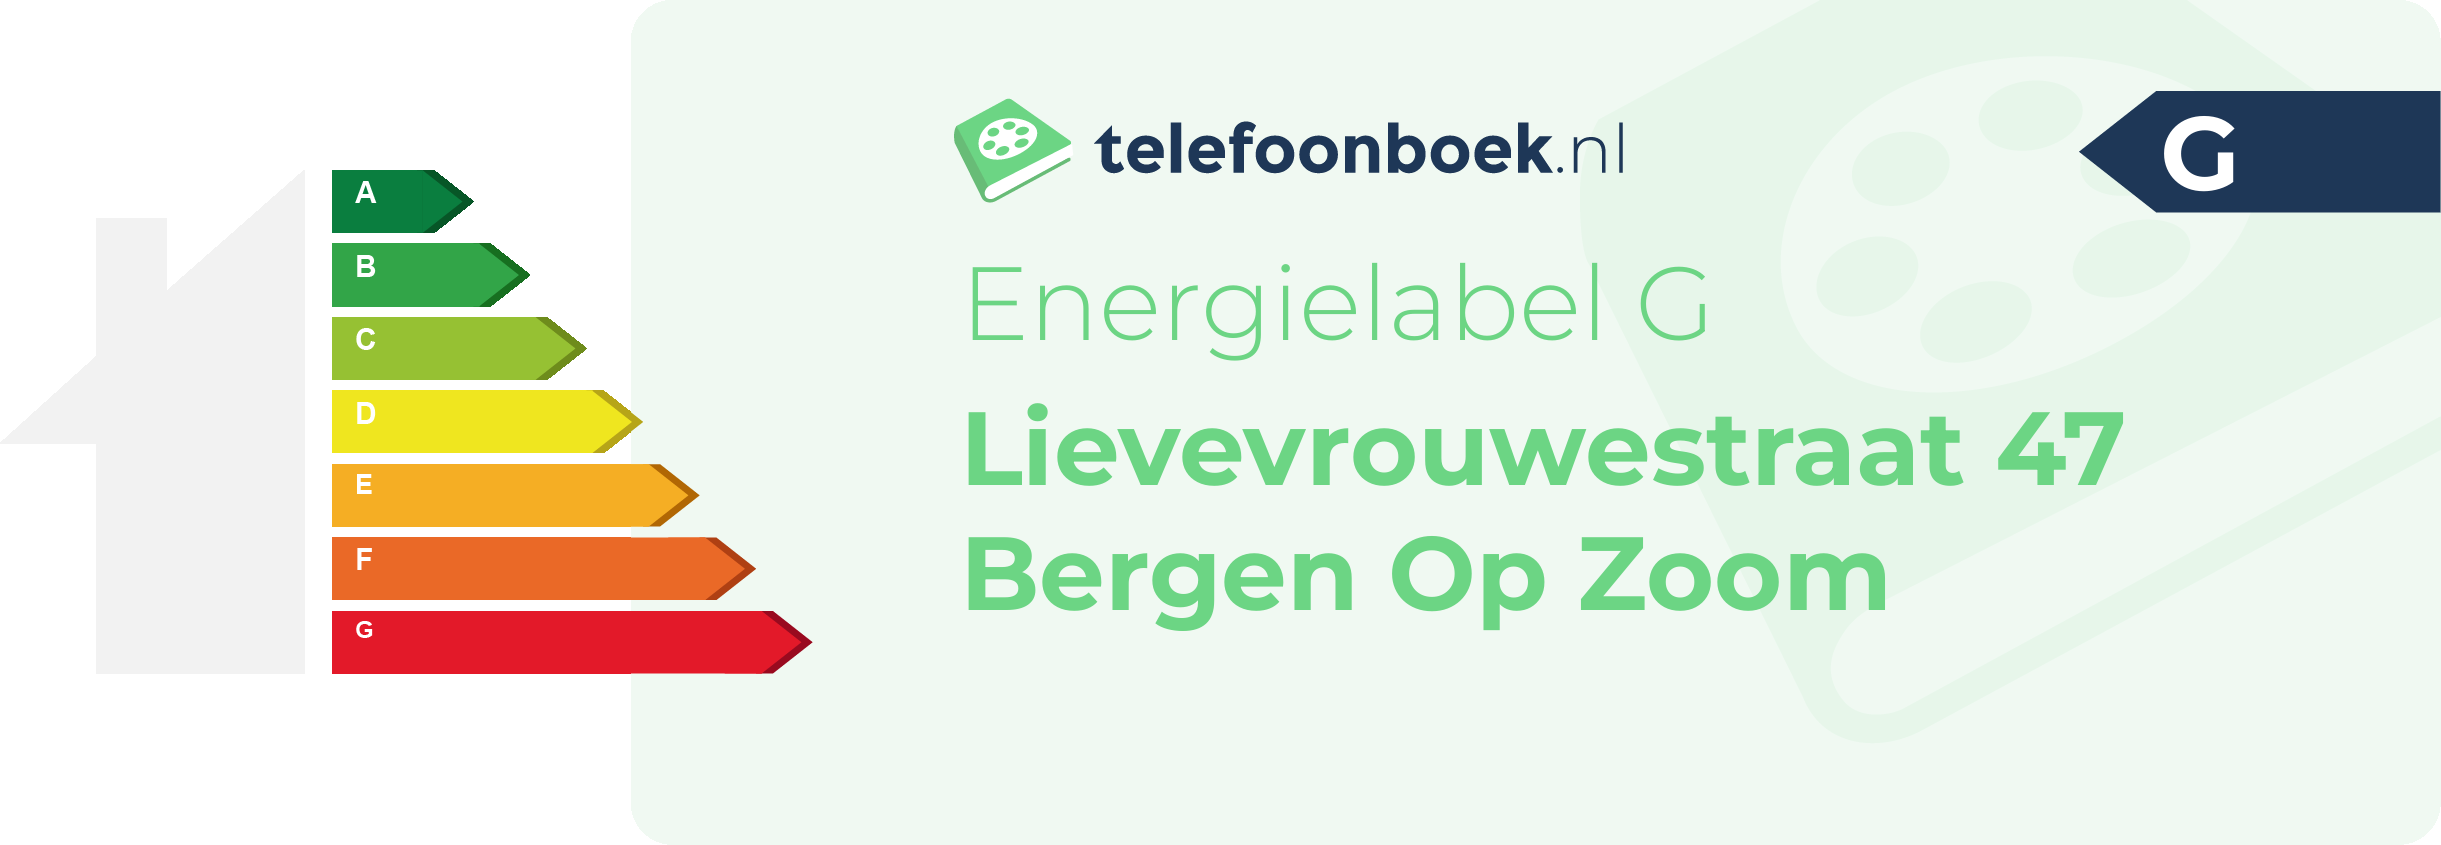 Energielabel Lievevrouwestraat 47 Bergen Op Zoom